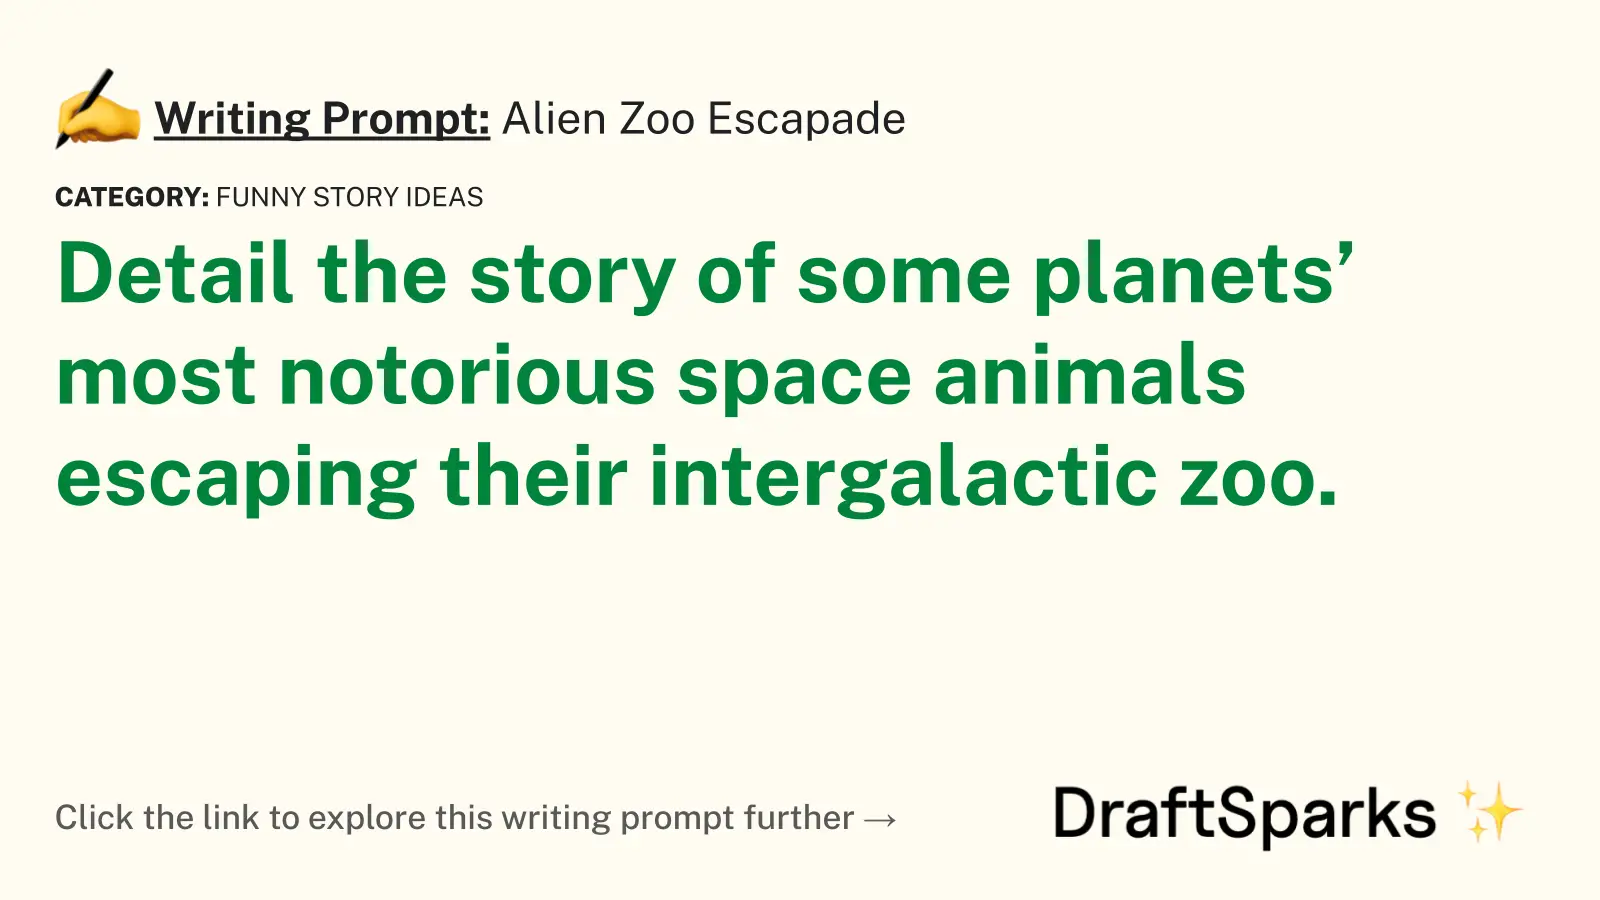 Alien Zoo Escapade